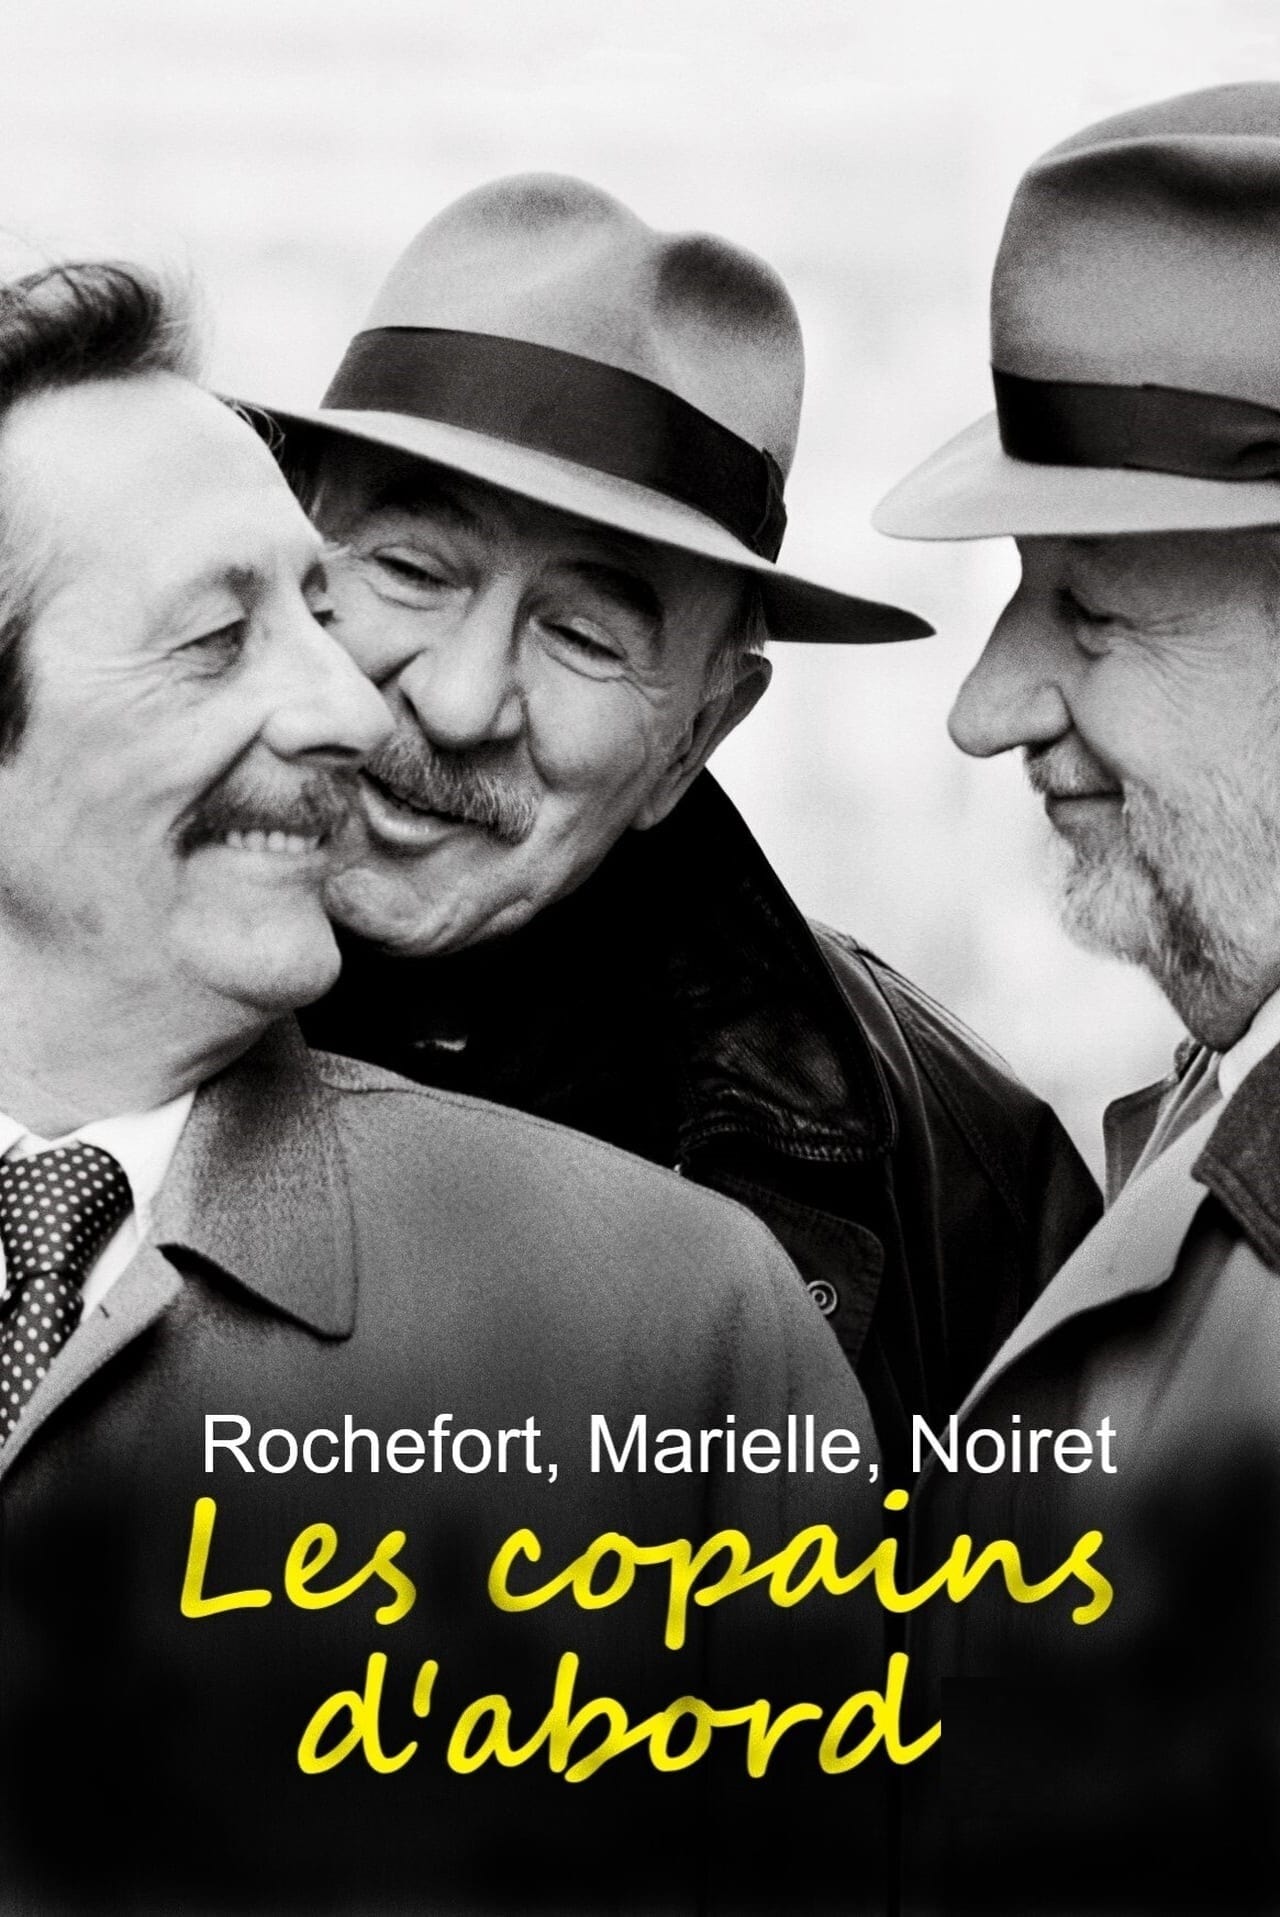 Rochefort, Marielle, Noiret: les copains d'abord (2020)